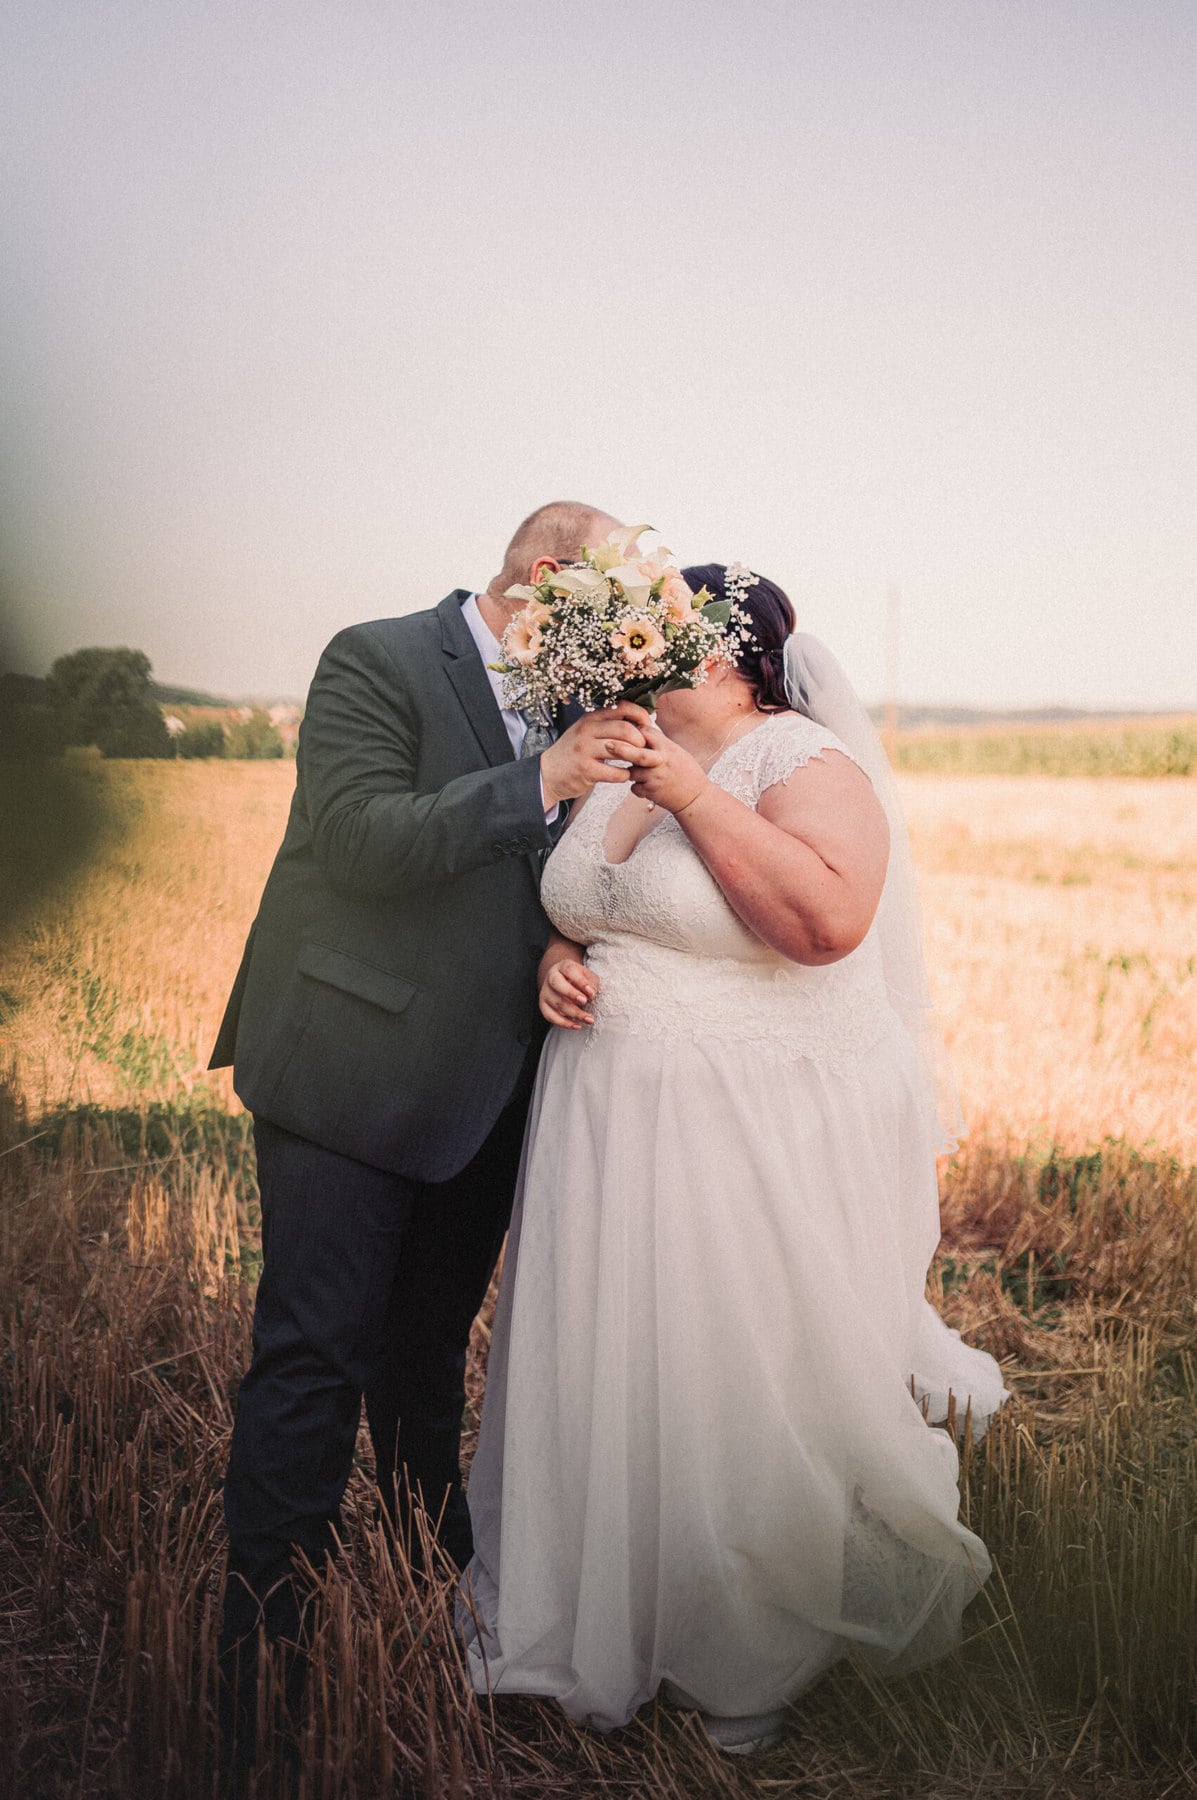 Das Brautpaar küsst sich beim Hochzeitsshooting in einem Feld in Gablingen und verdecken ihr Gesicht mit dem Brautstrauß.